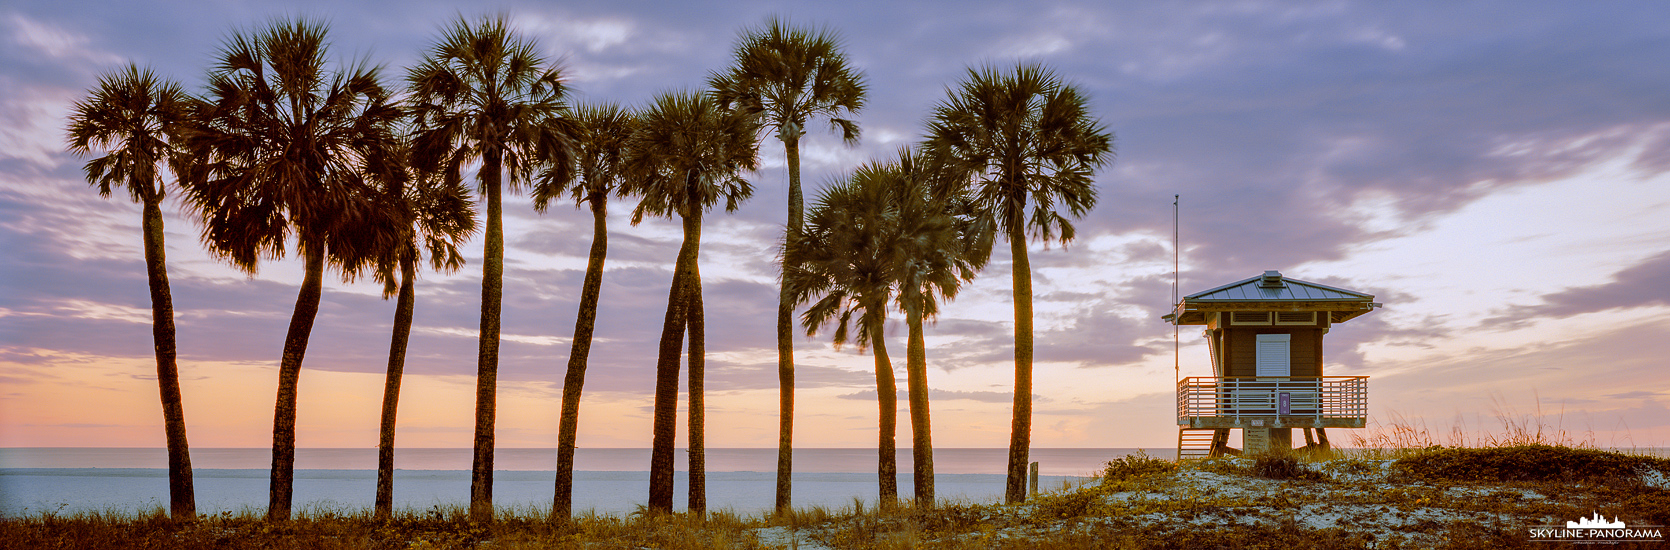 Panorama Florida - Eine Gruppe von Palmen zusammen mit einem Rettungsschwimmerturm am am Coquina Beach in Bradenton Beach/ Florida. Das Panorama ist kurz nach einem perfekten Sonnenuntergang entstanden und im Format 6x17 auf Kodak Portra 160 Film festgehalten.